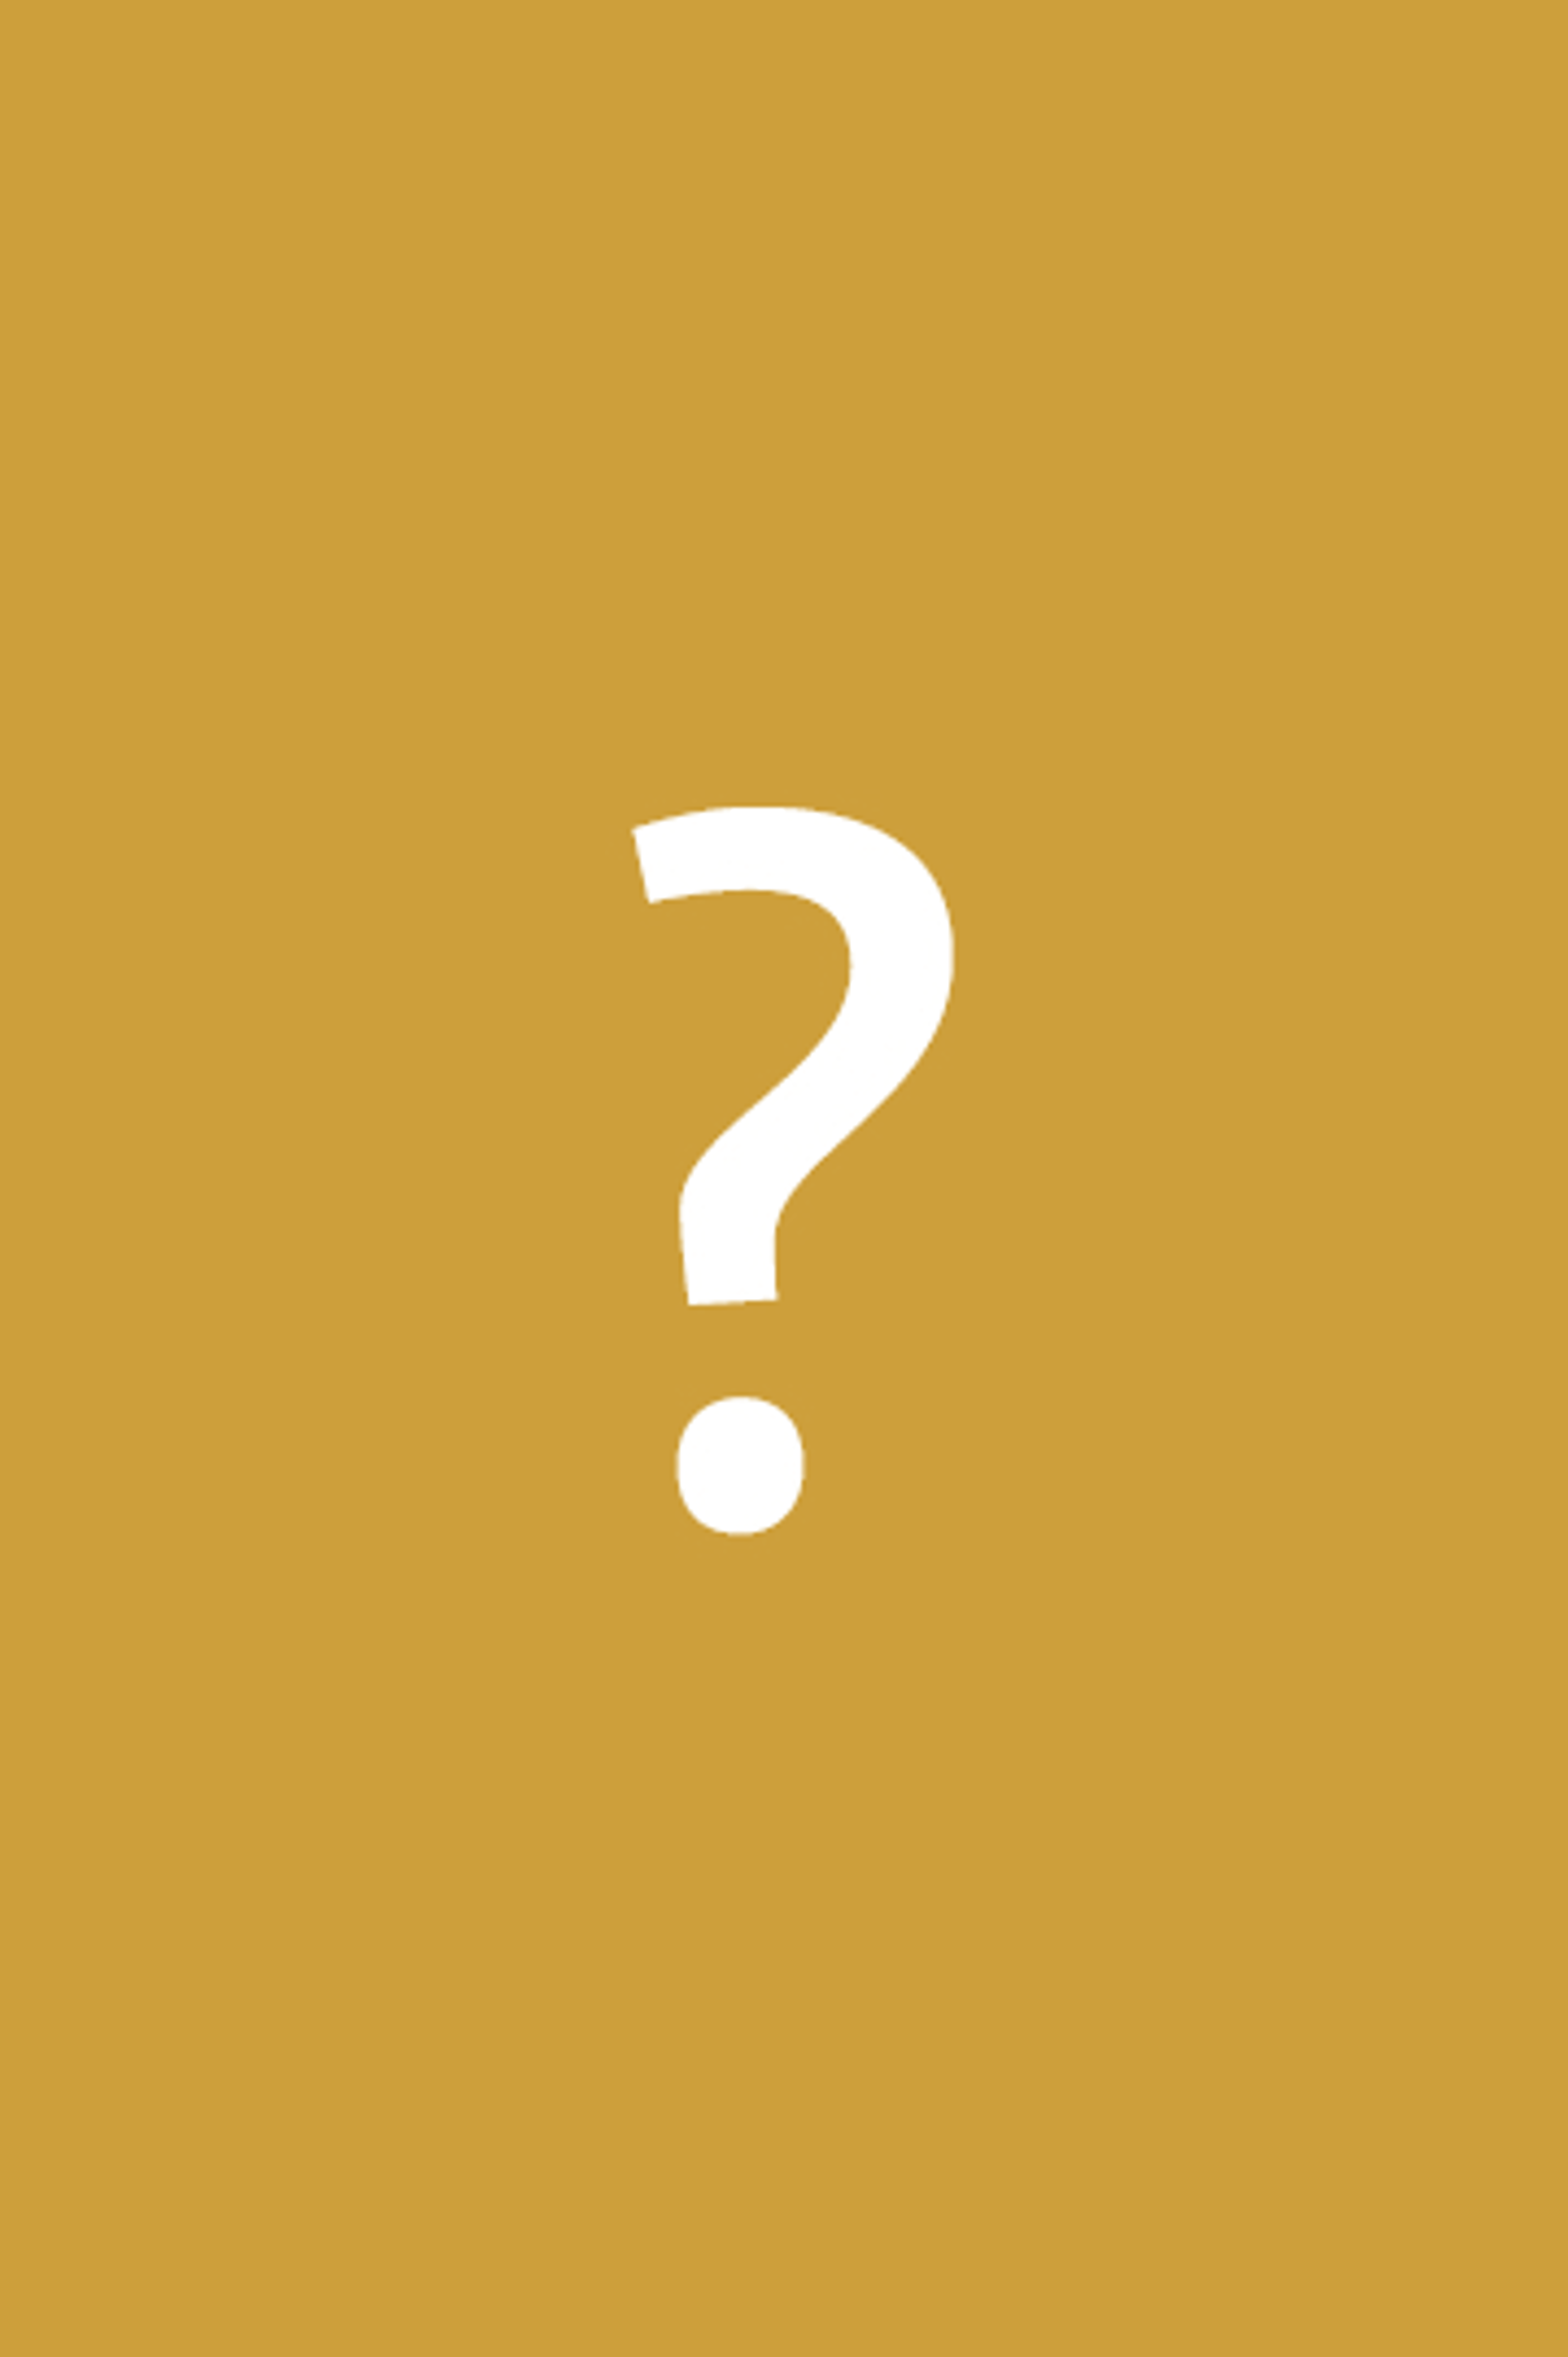 Whyz_Vacature_Question-Mark_Oker – bewerkt naar langwerpig